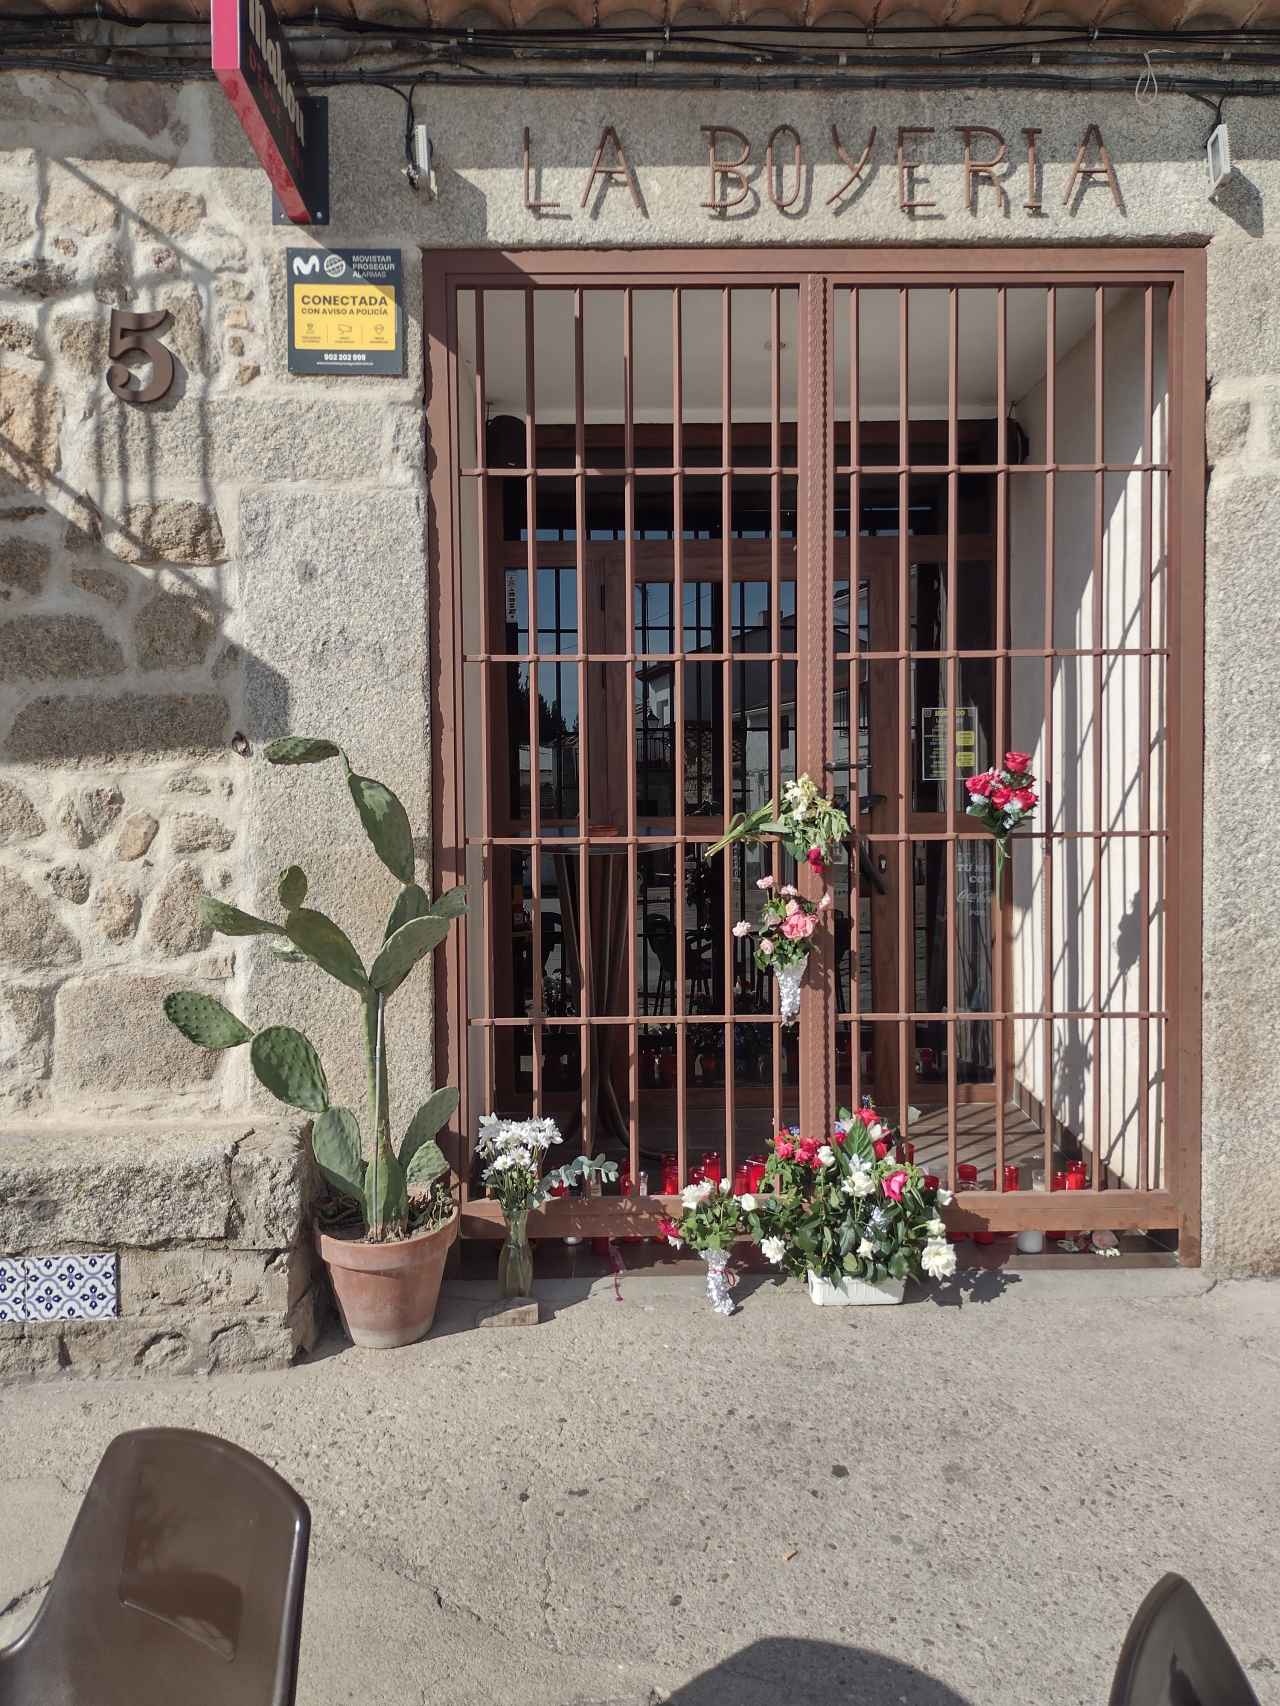 Flores para Belén en La Boyería, el bar que regentaba en la Plaza de Pelahustán